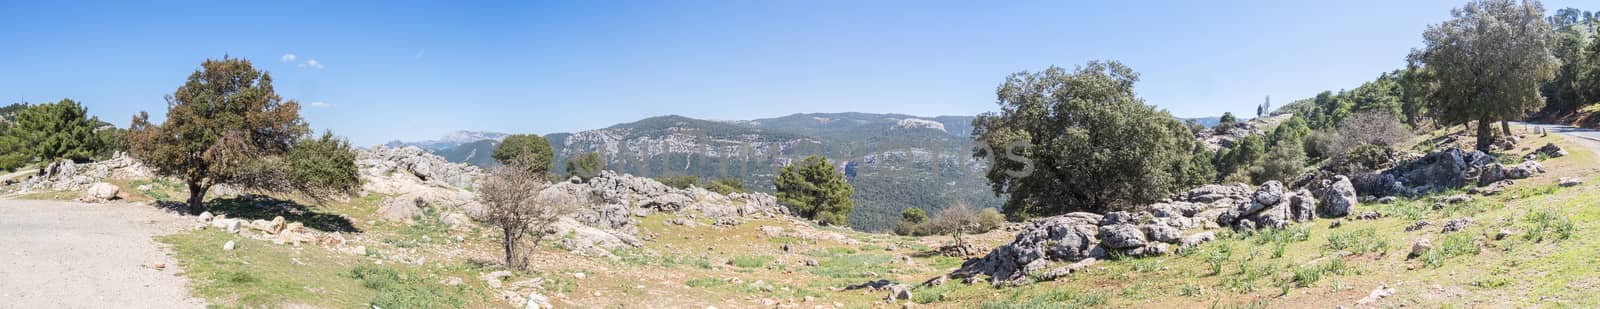 Paso del aire viewpoint in Sierra de Cazorla, Jaen, Spain